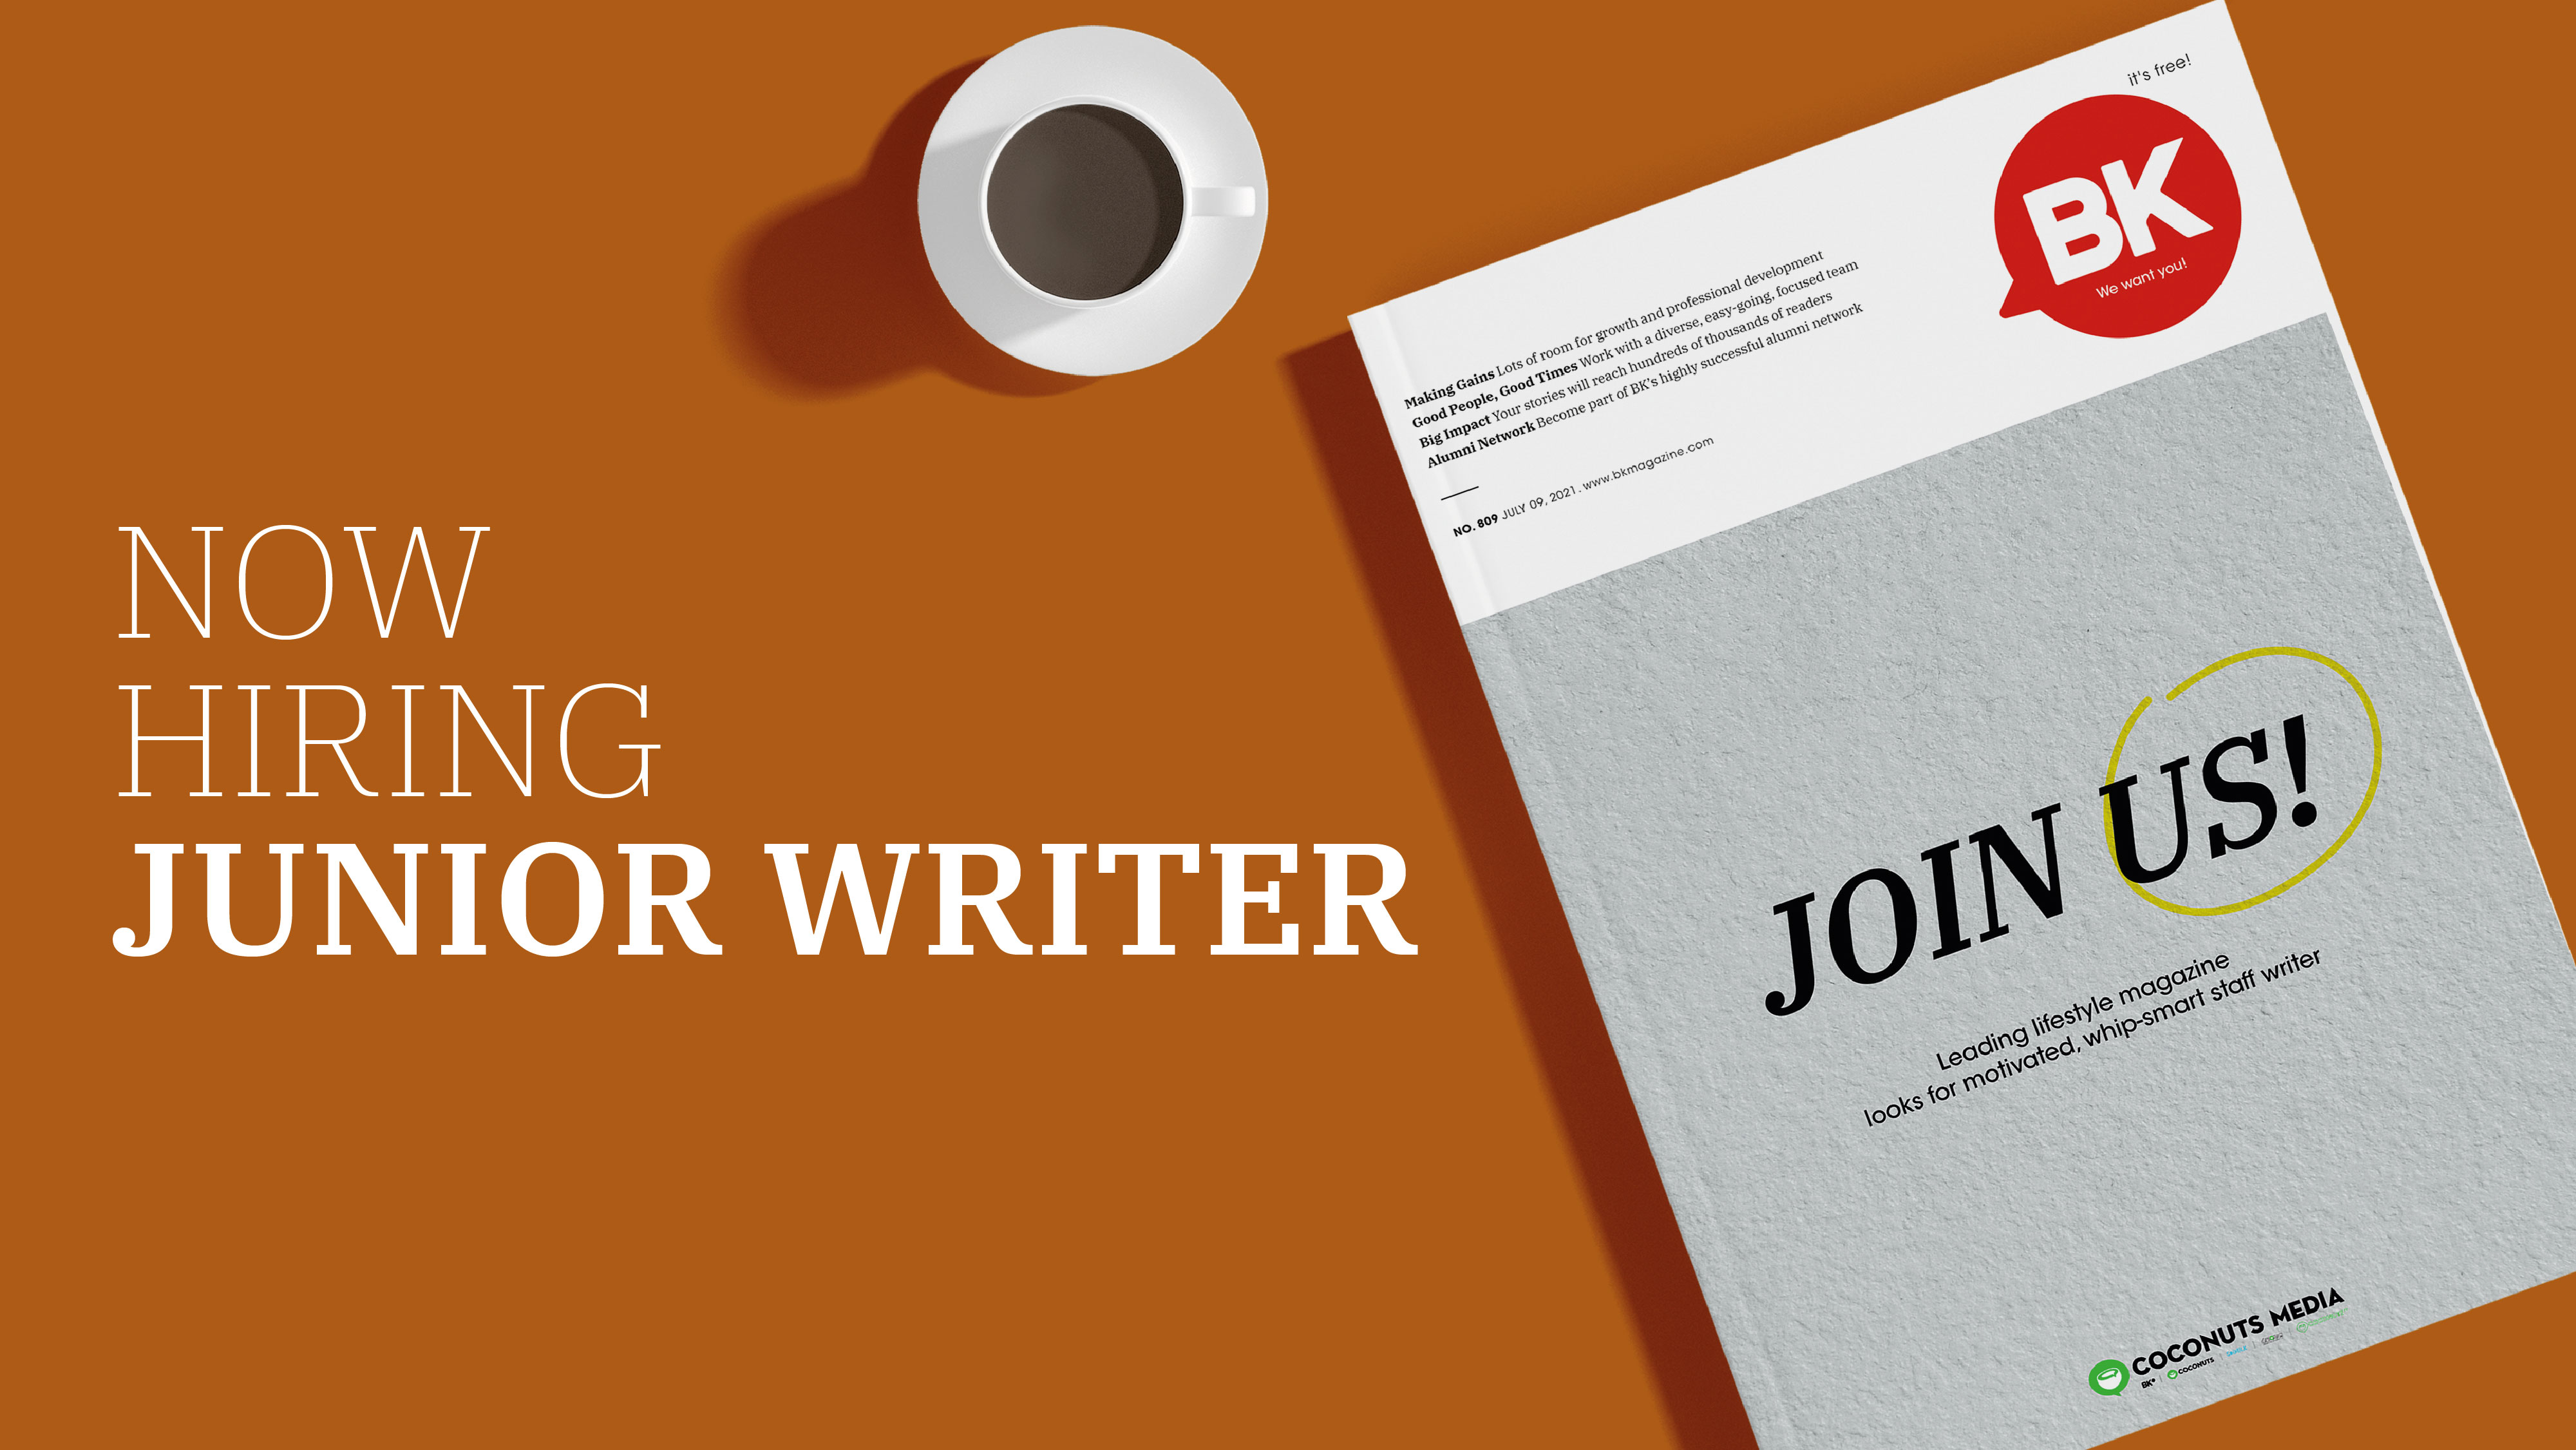 BK is hiring a Junior Writer!  BK Magazine Online